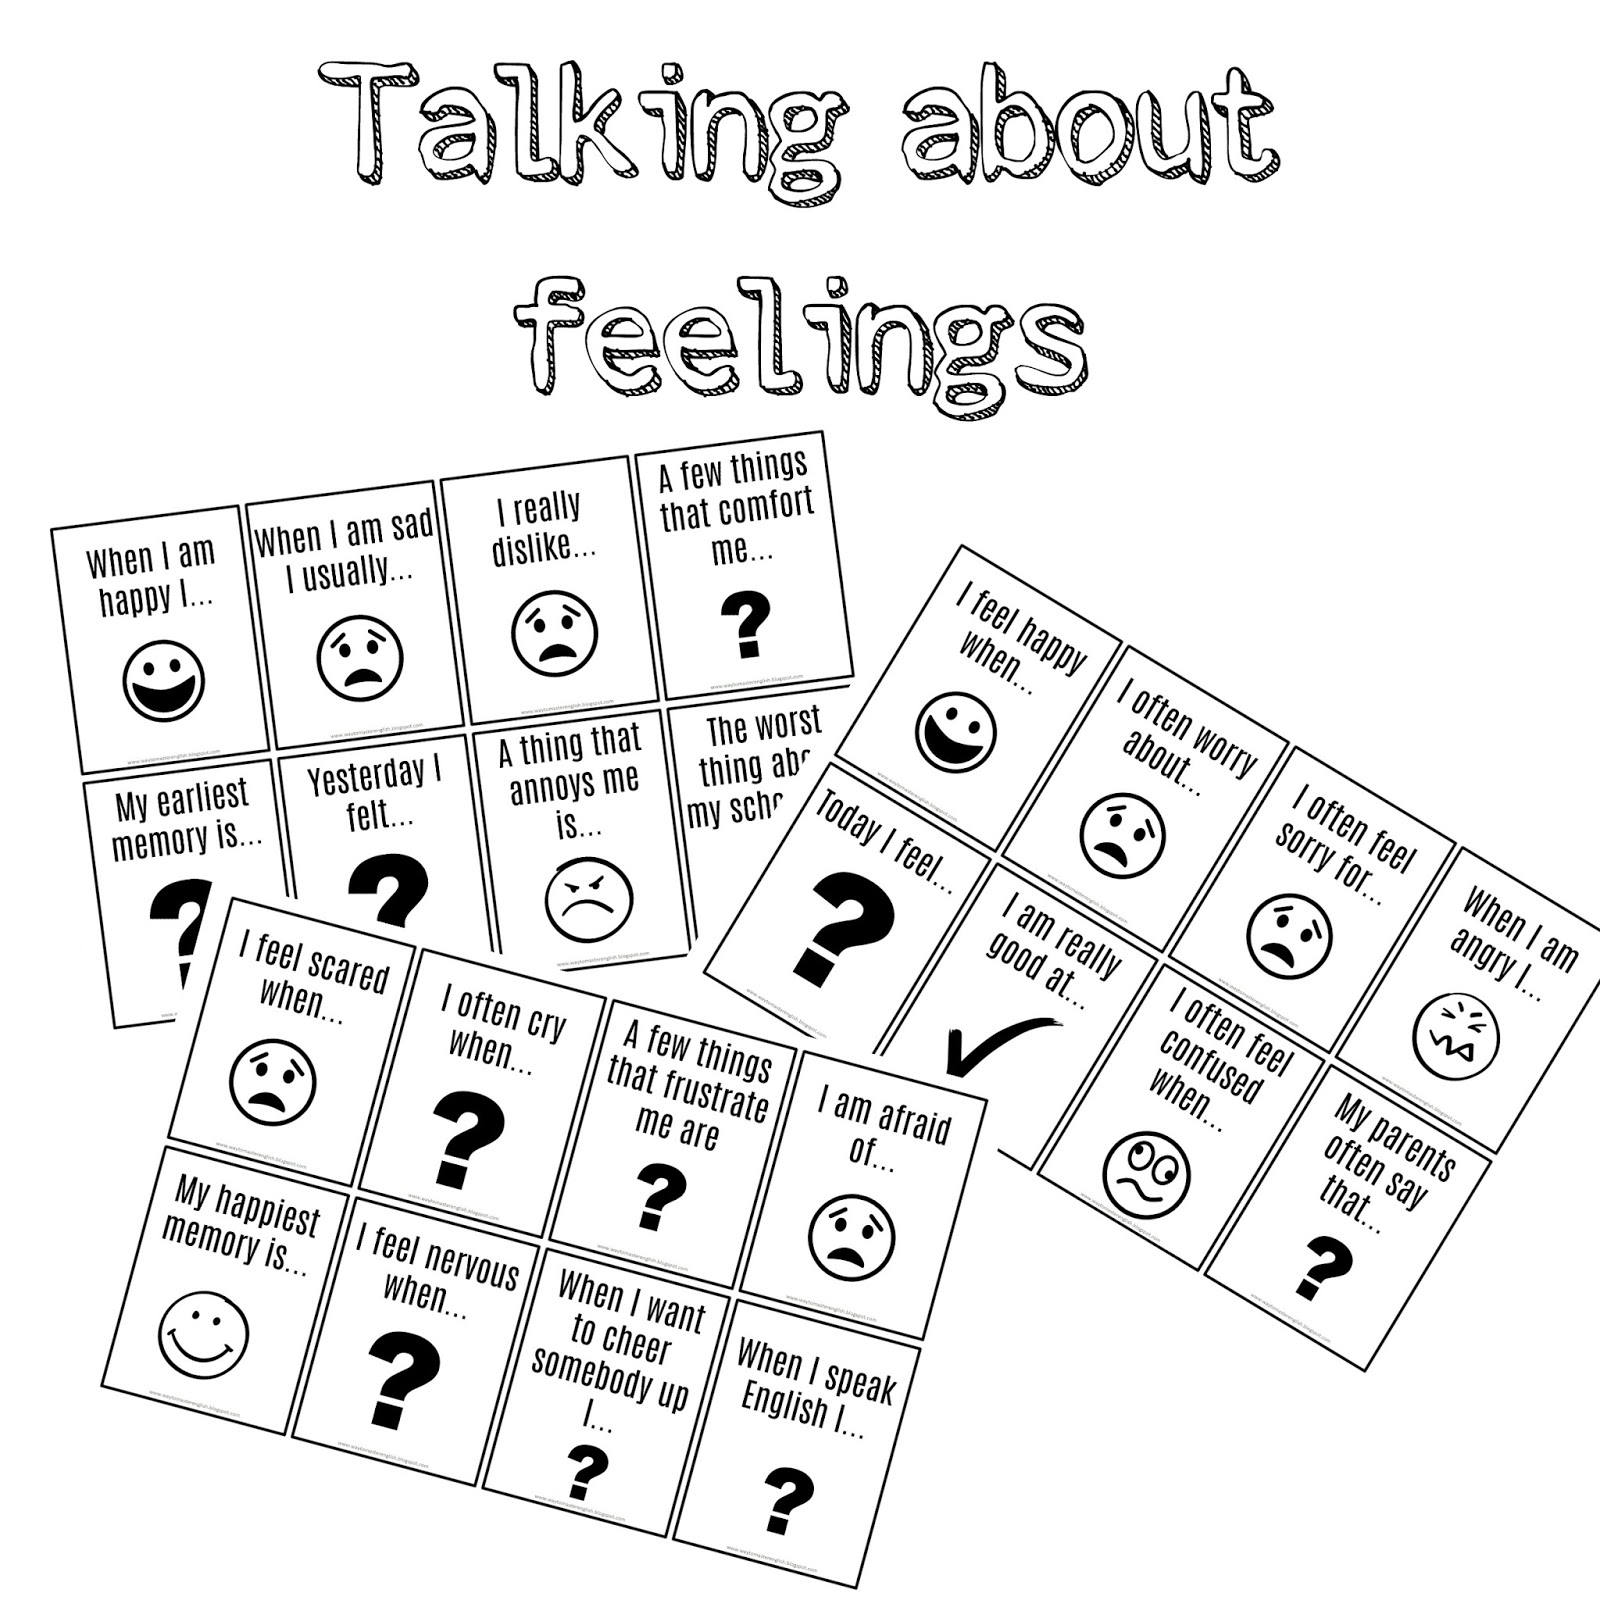 About feelings. Talk about feelings. Lagwagon Let's talk about feelings. Let's talk about emotions. Talking about feelings